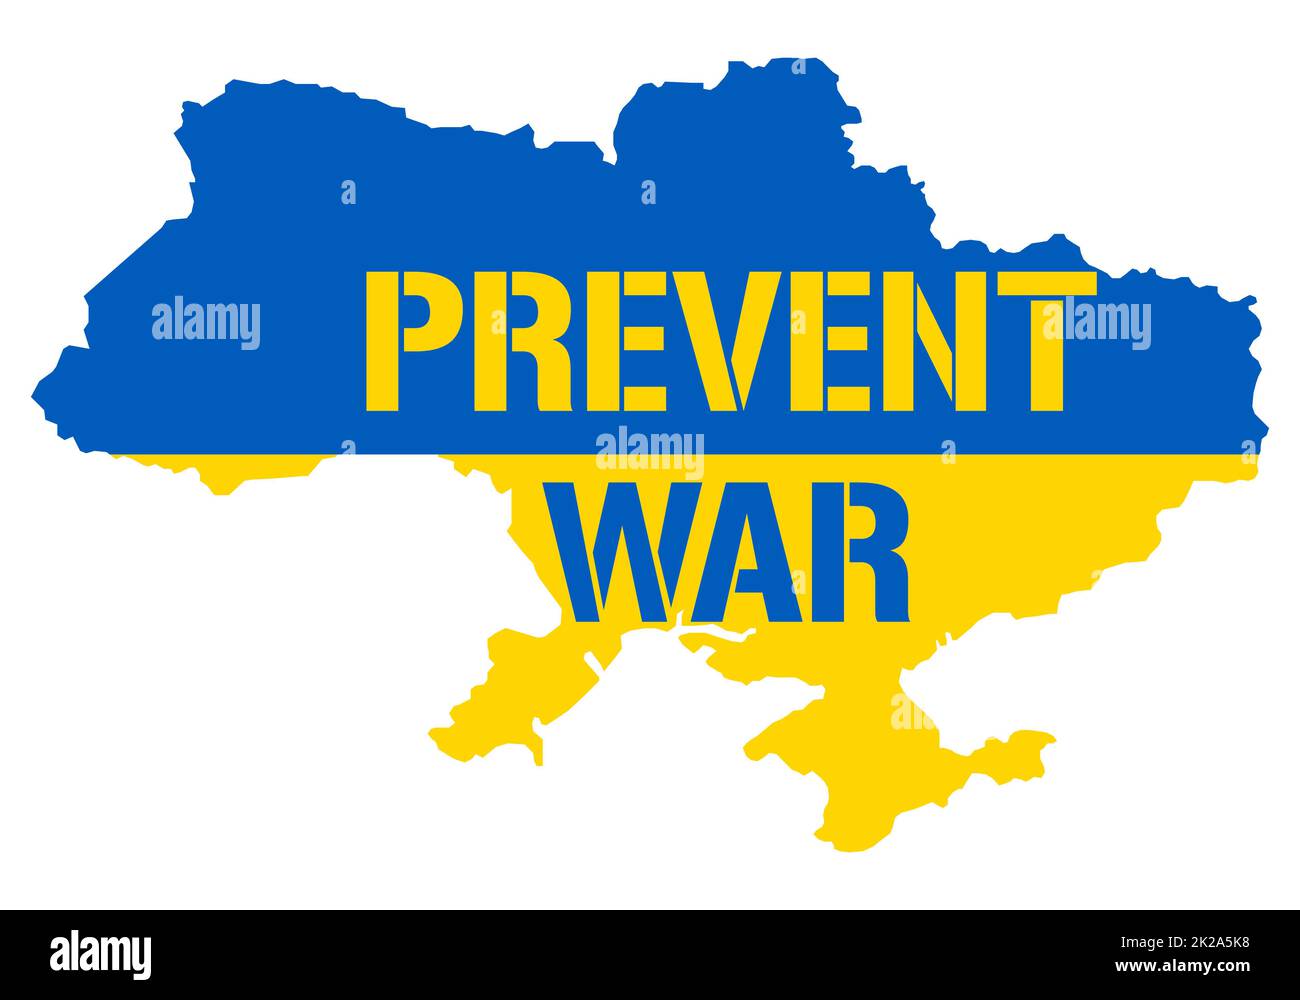 Verhindern Sie Krieg im Ukraine-Land. Konzept in Form einer ukrainischen Karte mit einer Inschrift mit Botschaft zum Präventionskrieg. Freiheit und Frieden für die Ukraine vor den Eingriffen des russischen Aggressors Stockfoto